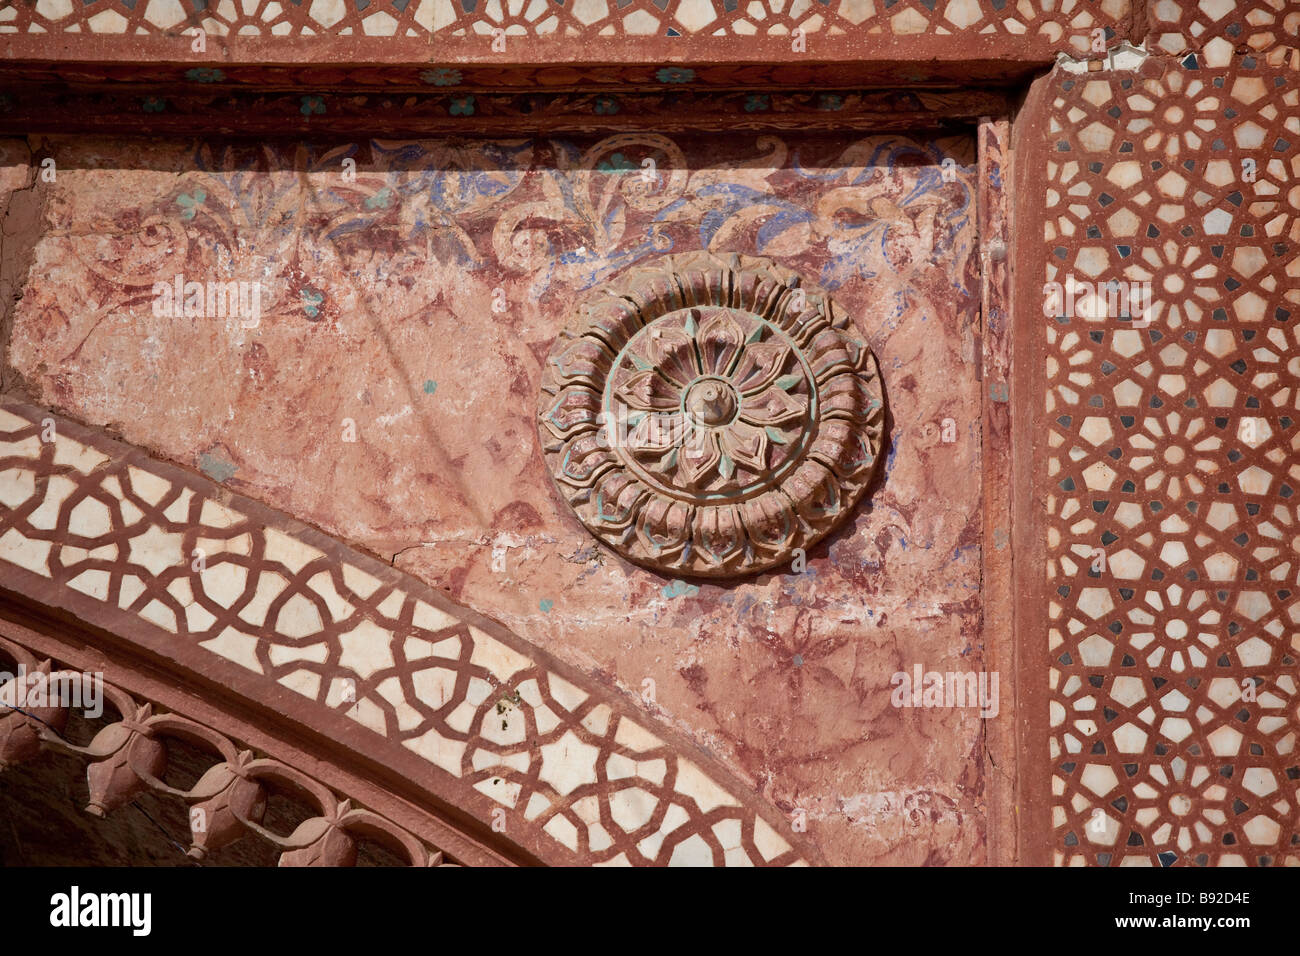 Détail architectural à l'intérieur de la mosquée de vendredi à Fatehpur Sikri Inde Banque D'Images